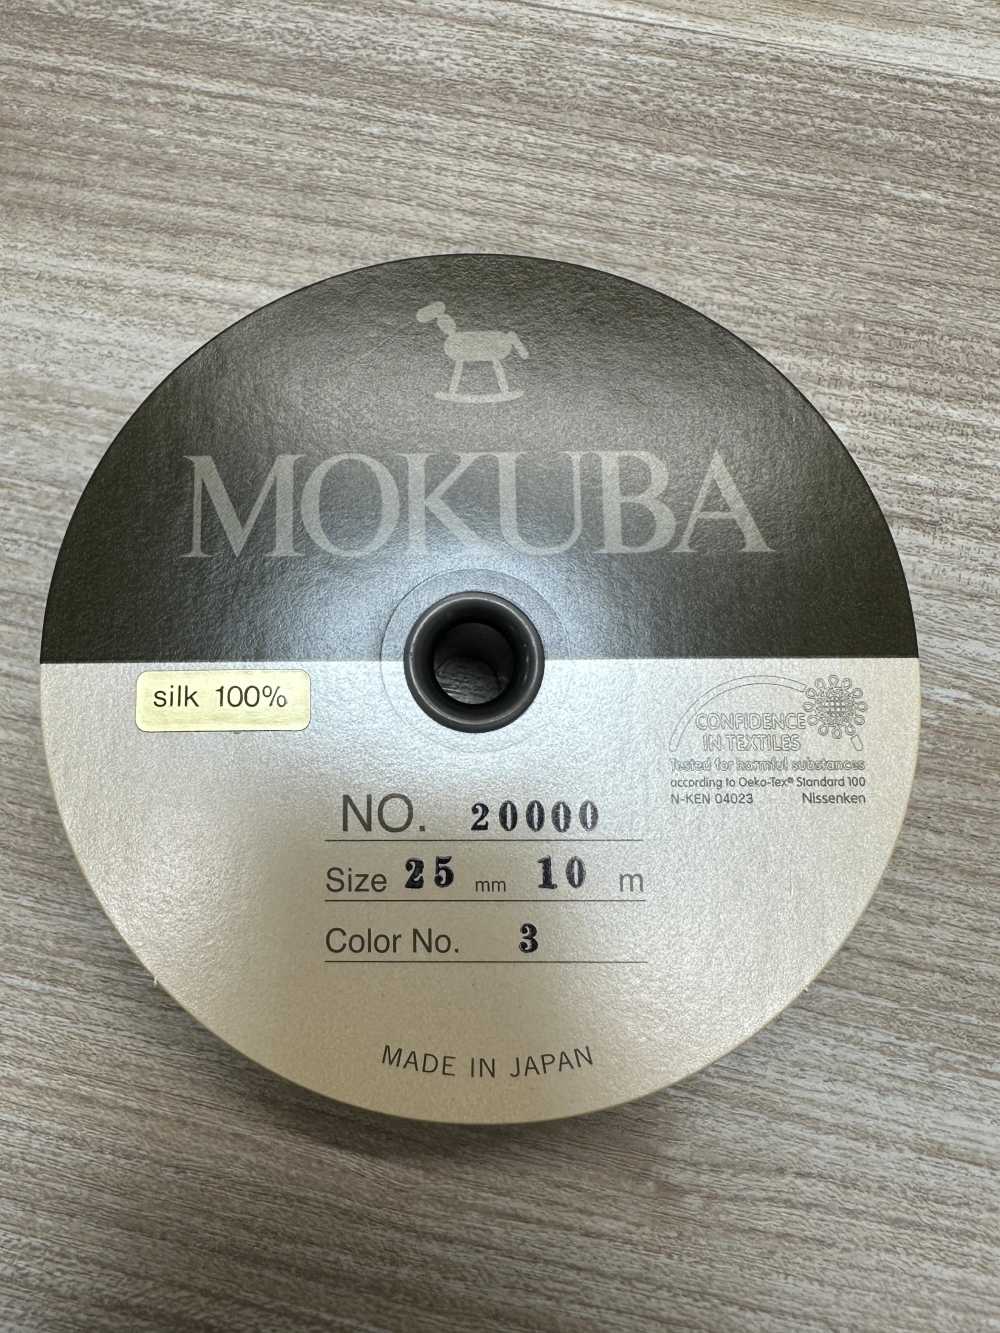 20000 MOKUBA シルク グログラン テープ【アウトレット】[リボン・テープ・コード] モクバ